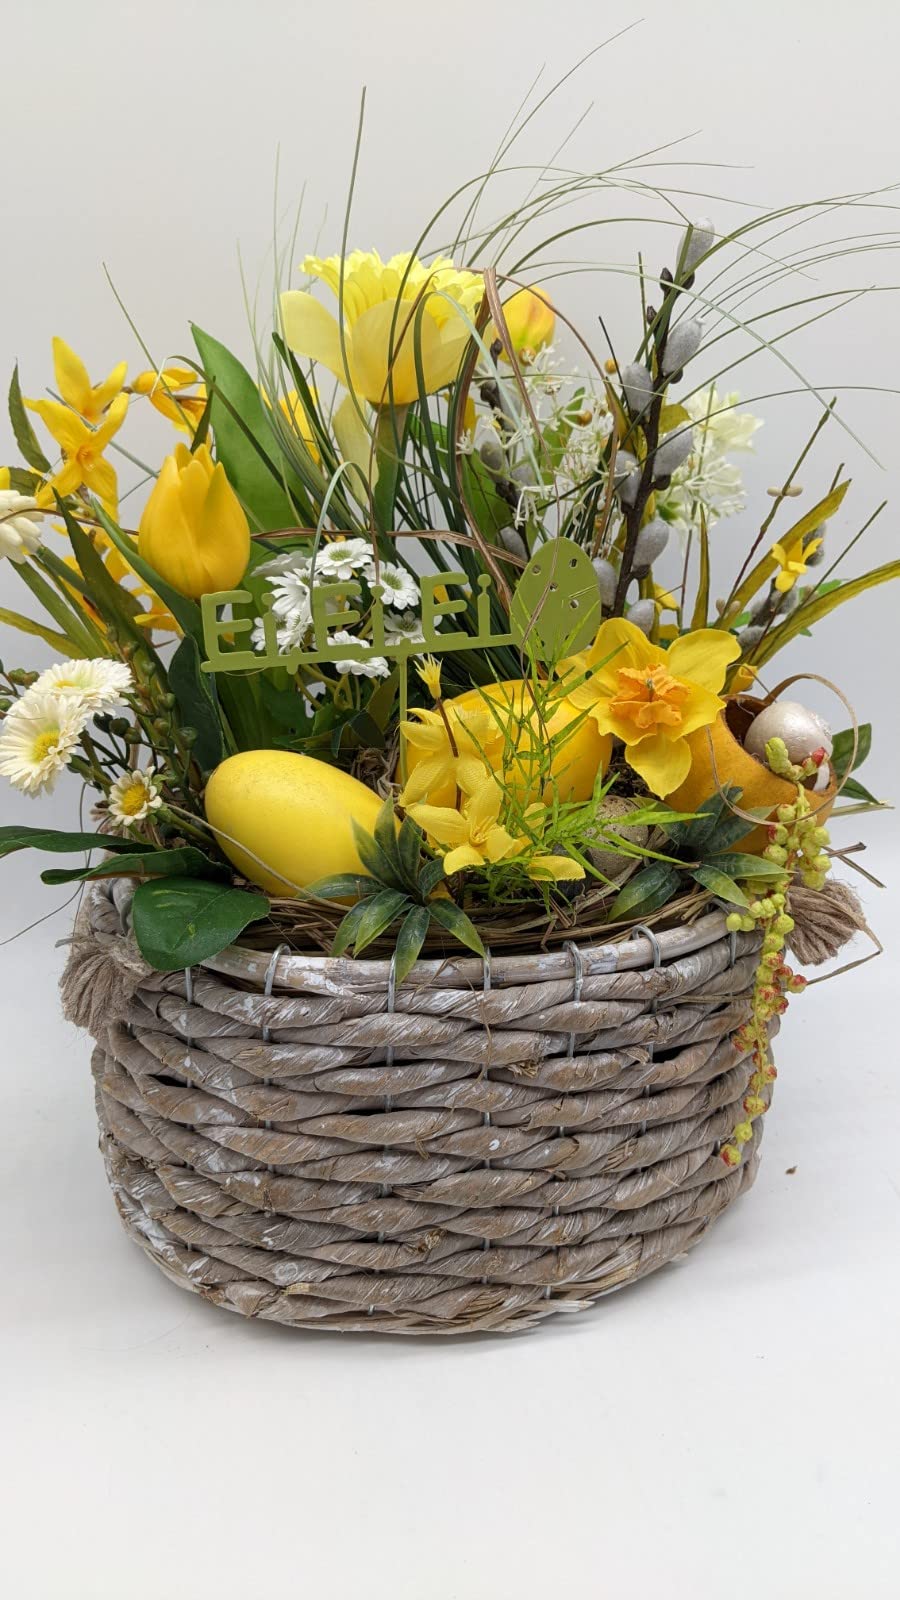 Ostergesteck Frühlingsgesteck Schriftzug Stecker Tulpen Narzisse Eier Weidenkätzchen Gräser gelb grün